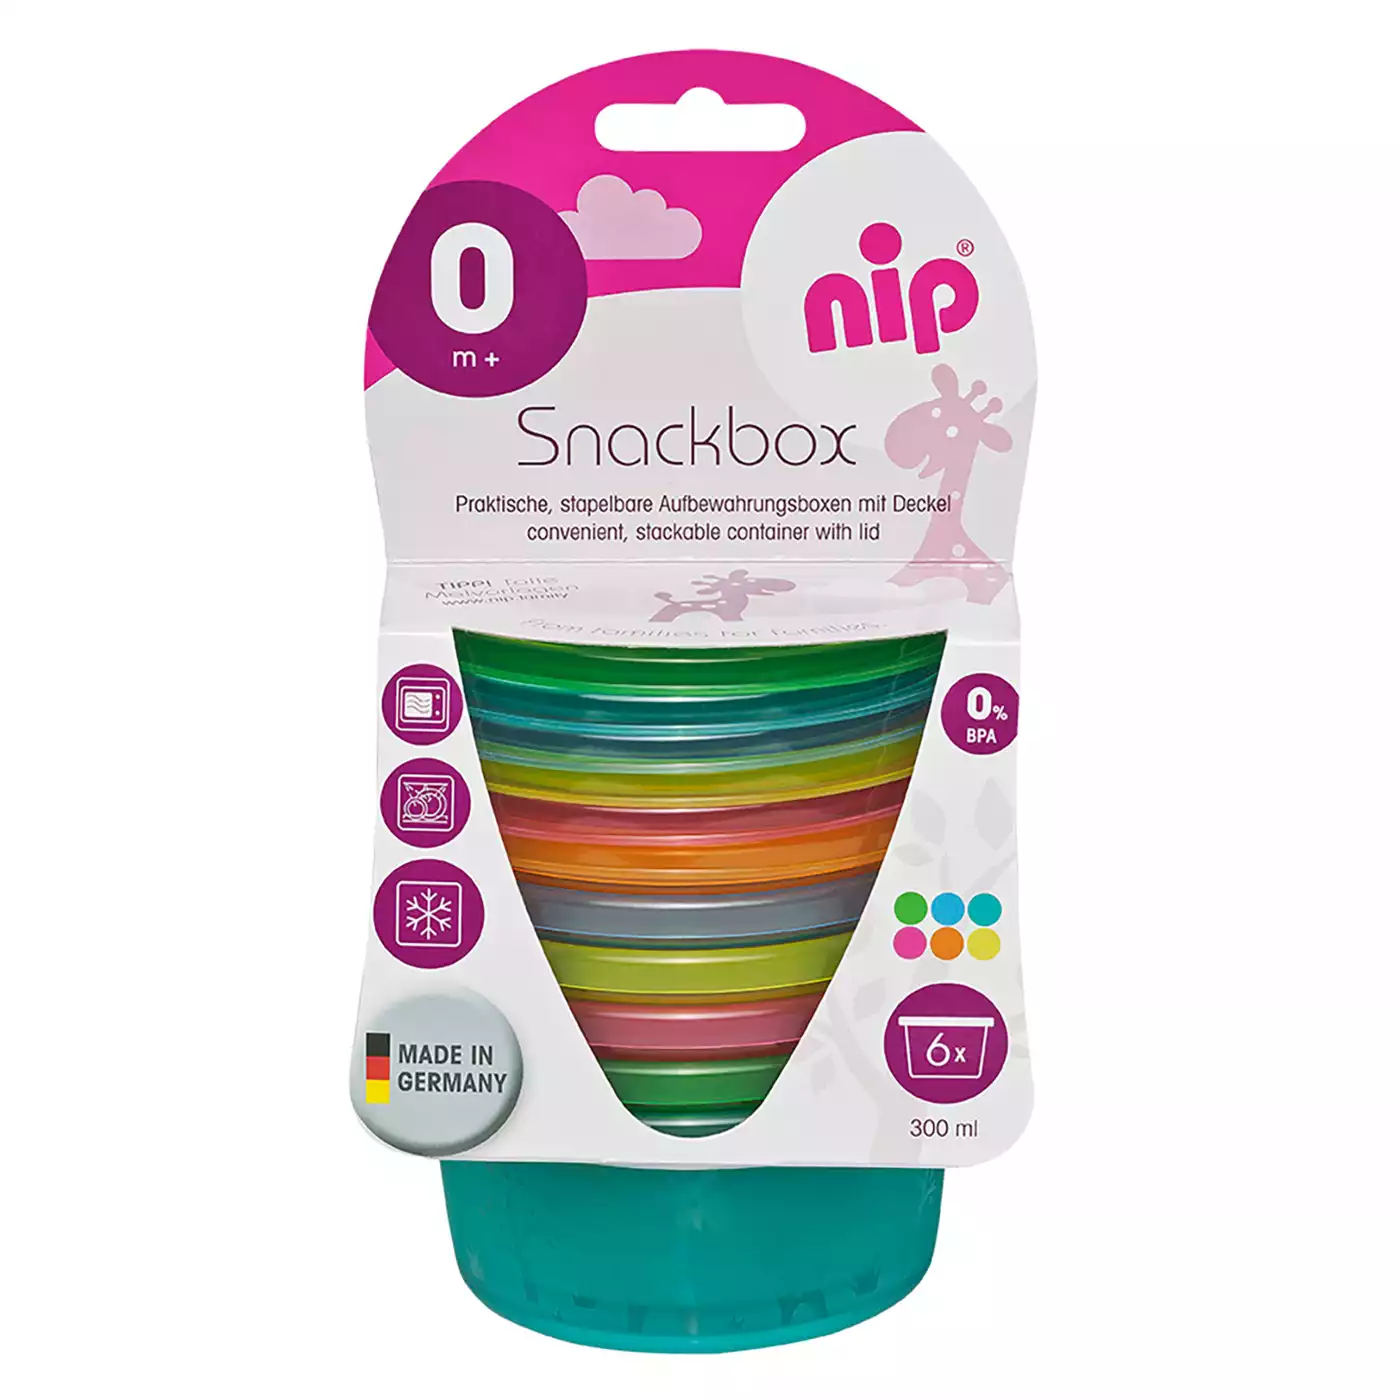 6er-Set Snackbox nip 2000572508902 8